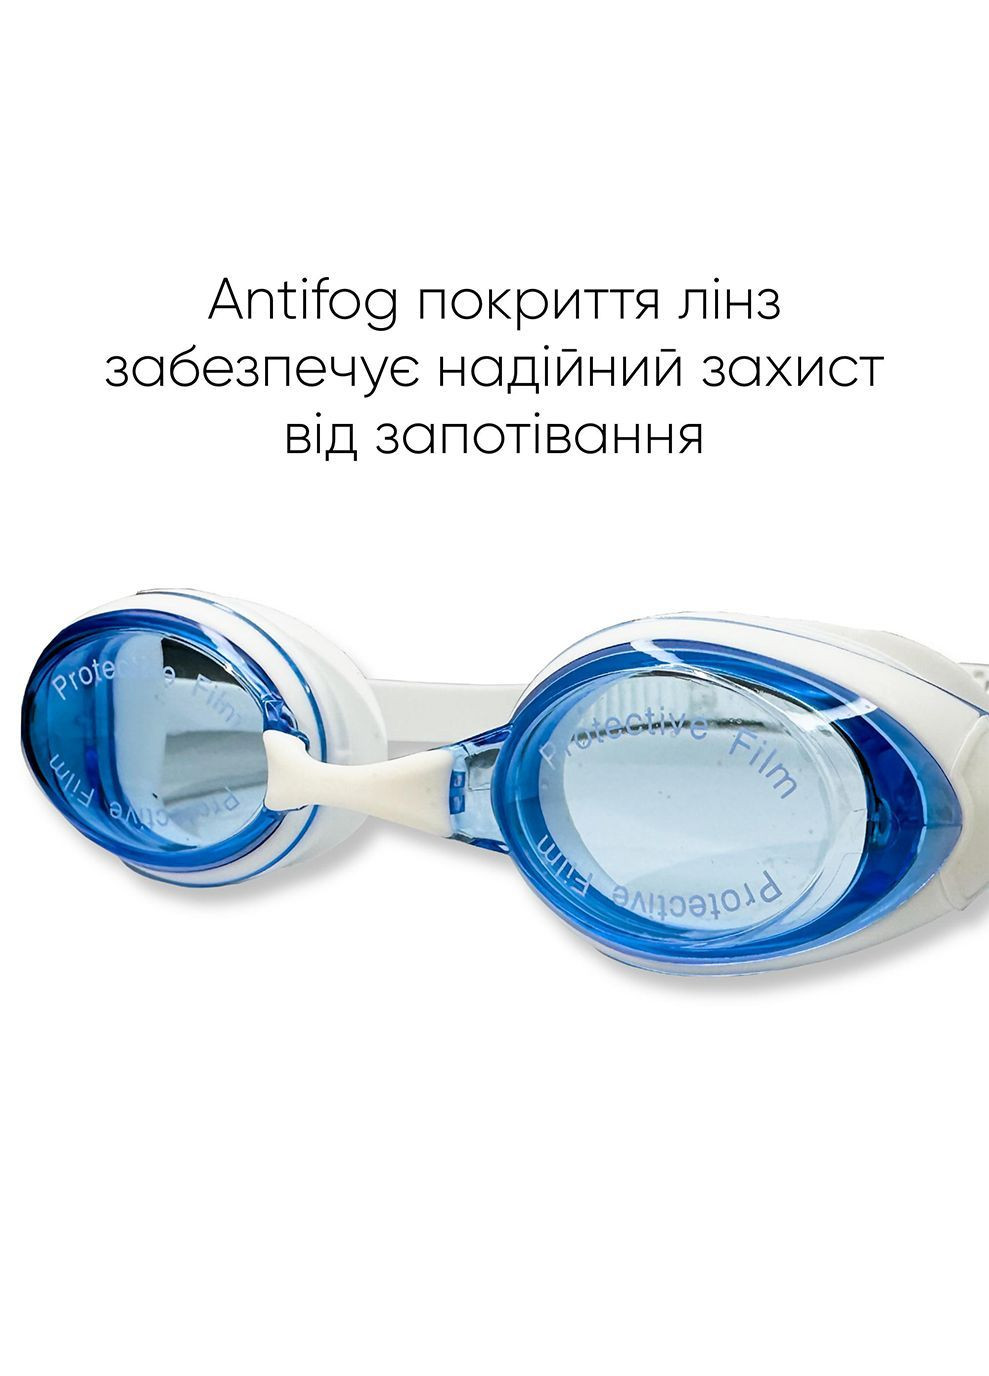 Подростковые (взрослые) Очки для плавания Maros JR Anti-fog Синий, Белый OSFM (2SG220-0304) Renvo (282615973)